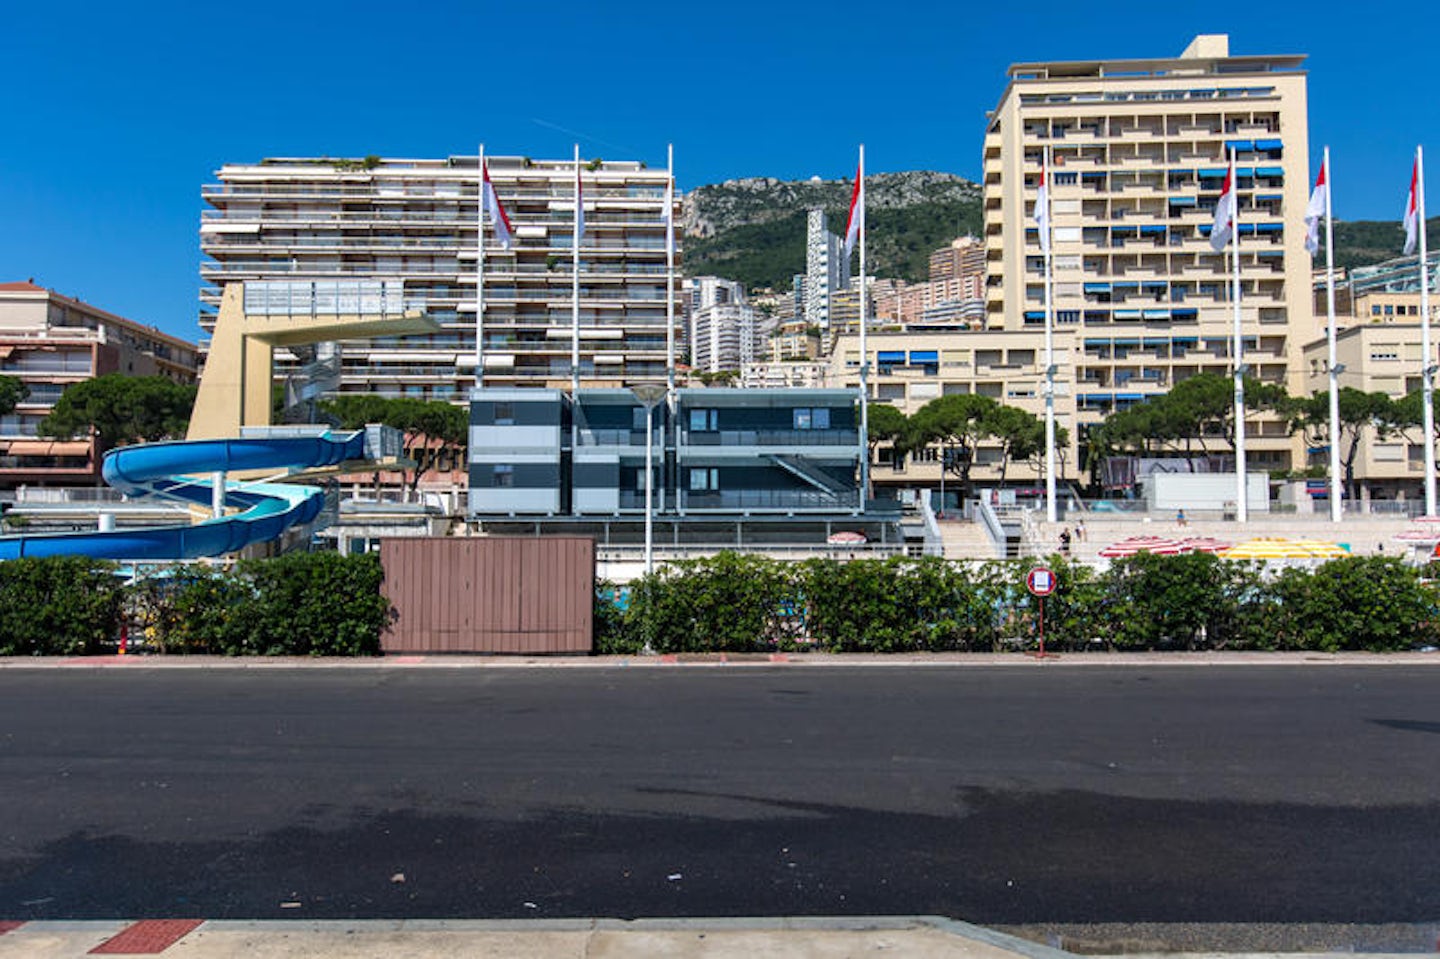 Monte Carlo Cruise Port